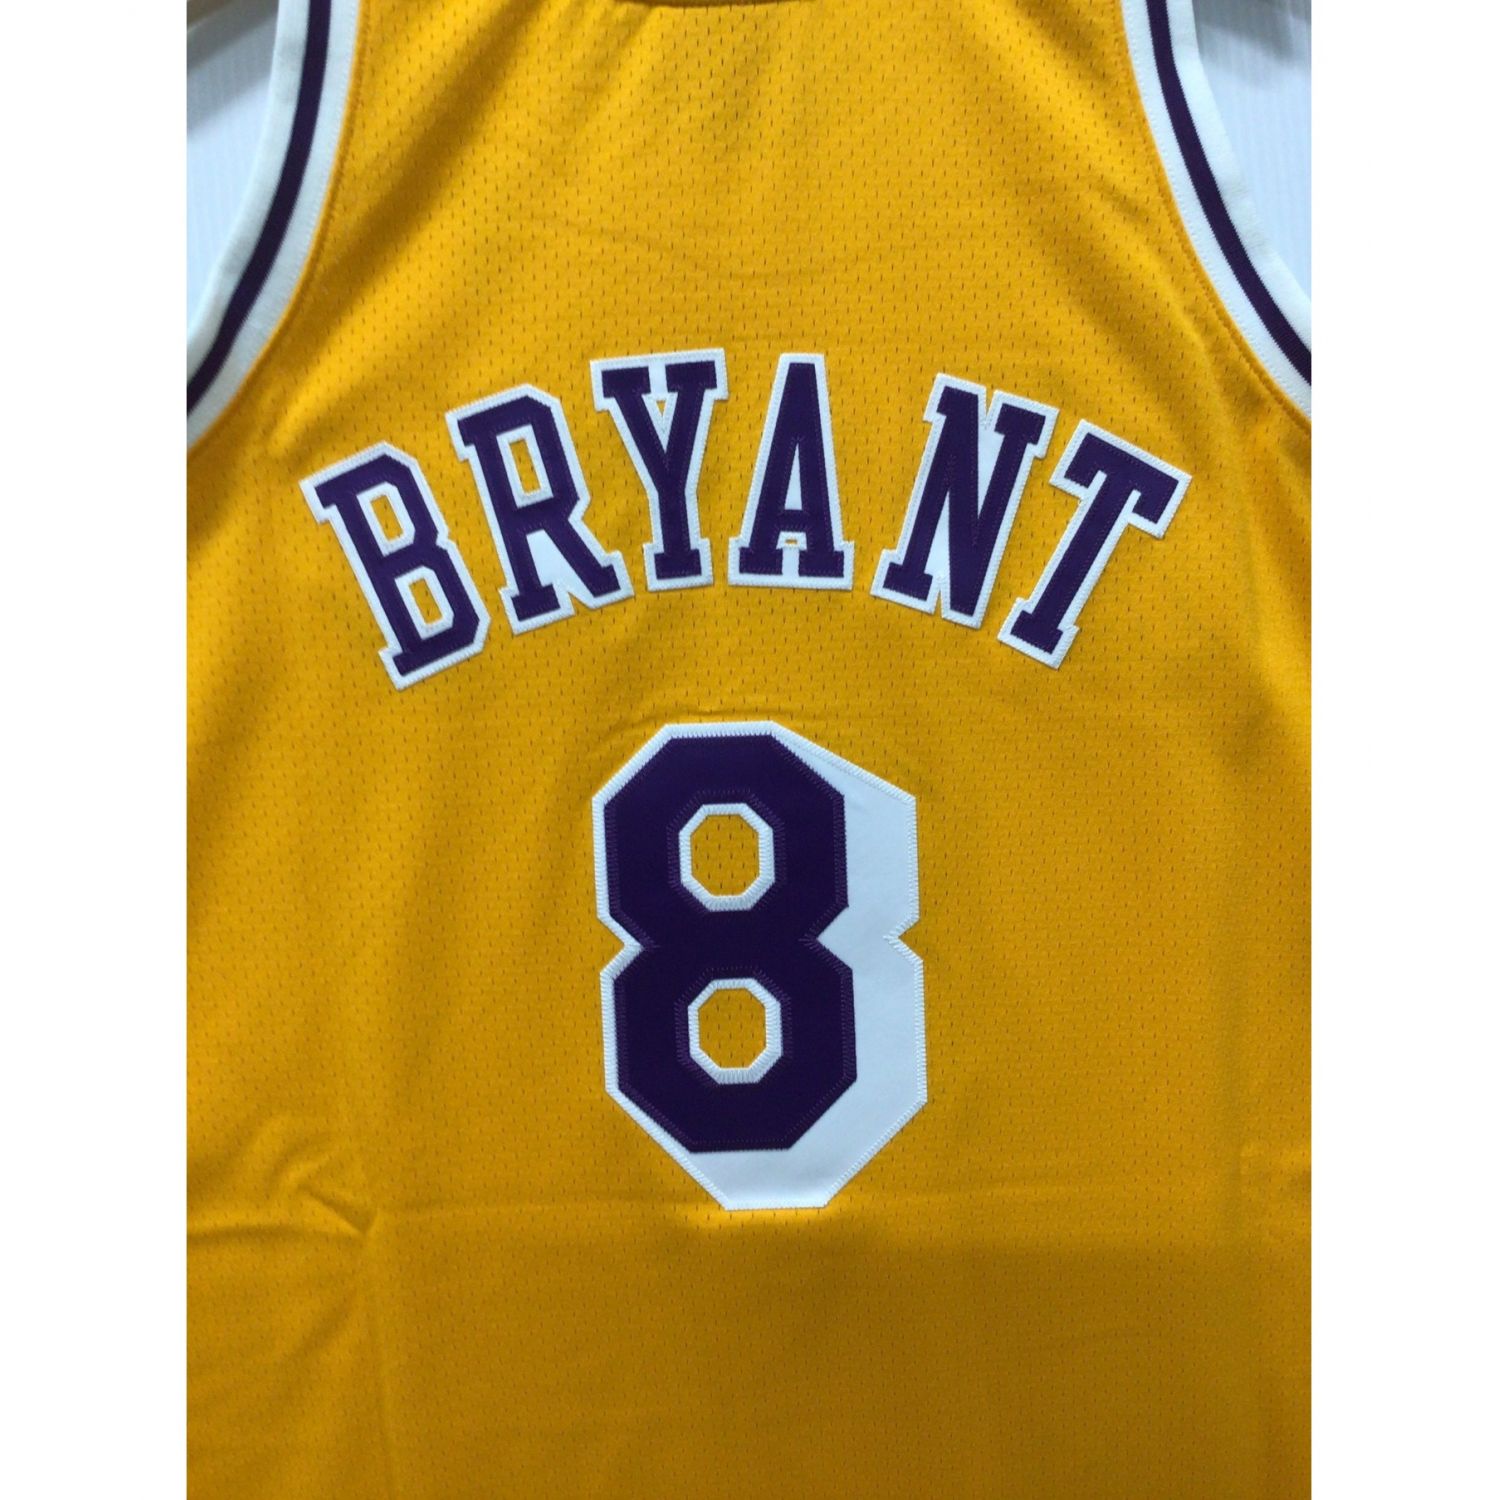 人気上昇中 NBA コービー ブライアント ロサンゼルス レイカーズ ユニフォーム ジャージ オーセンティック 1996-97 ミッチェル